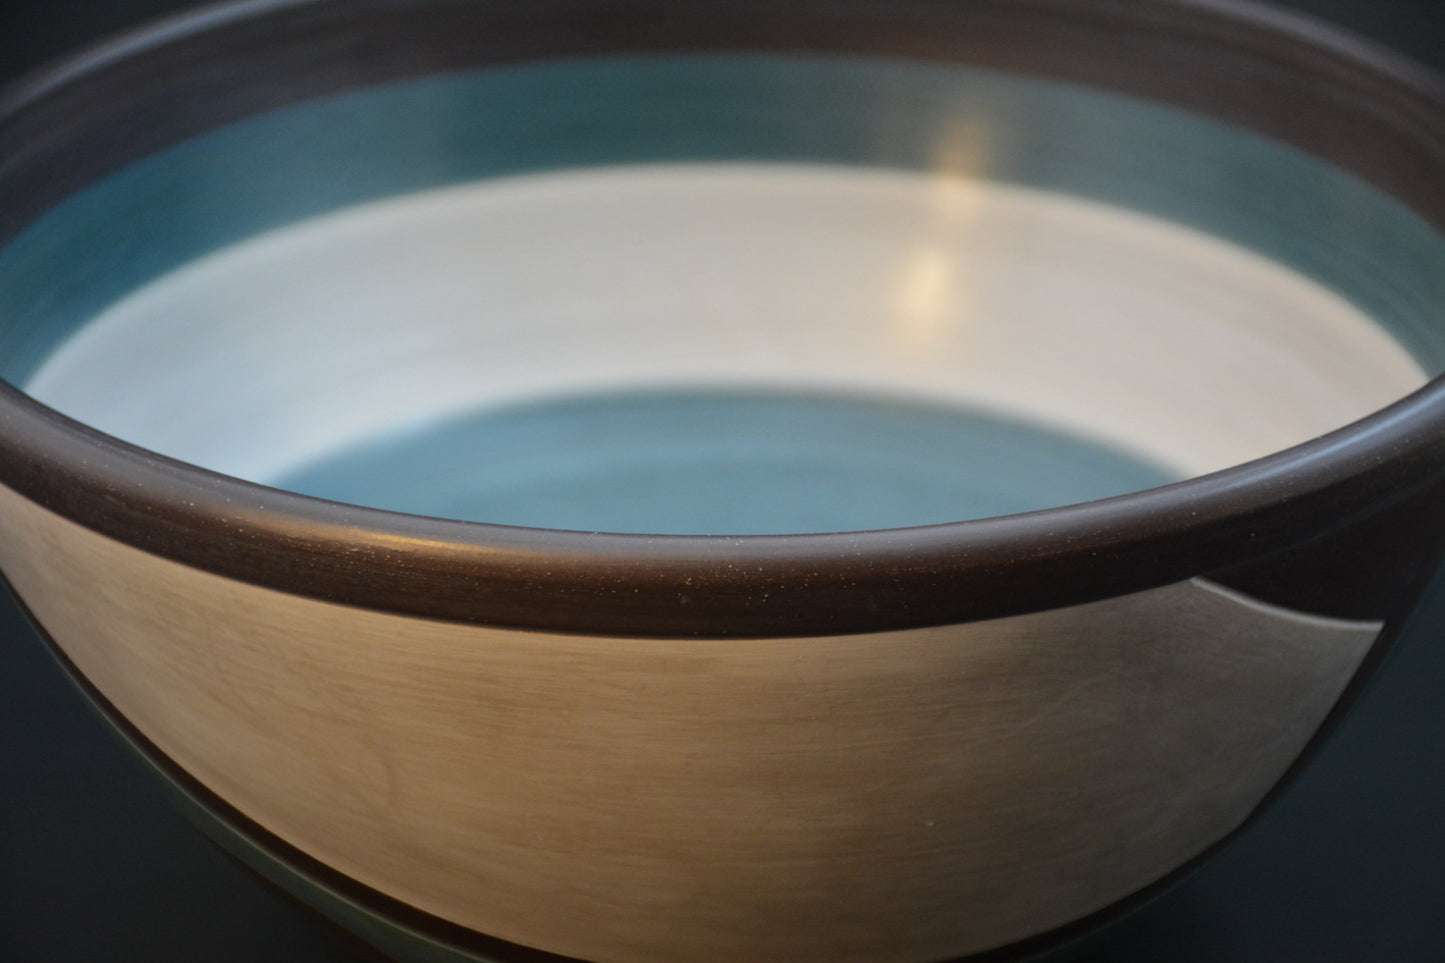 BL-24 Ceramic Fruit bowl - Decorative centerpiece - "ÉCLIPSE" - Bol à fruit - Centre de table décoratif